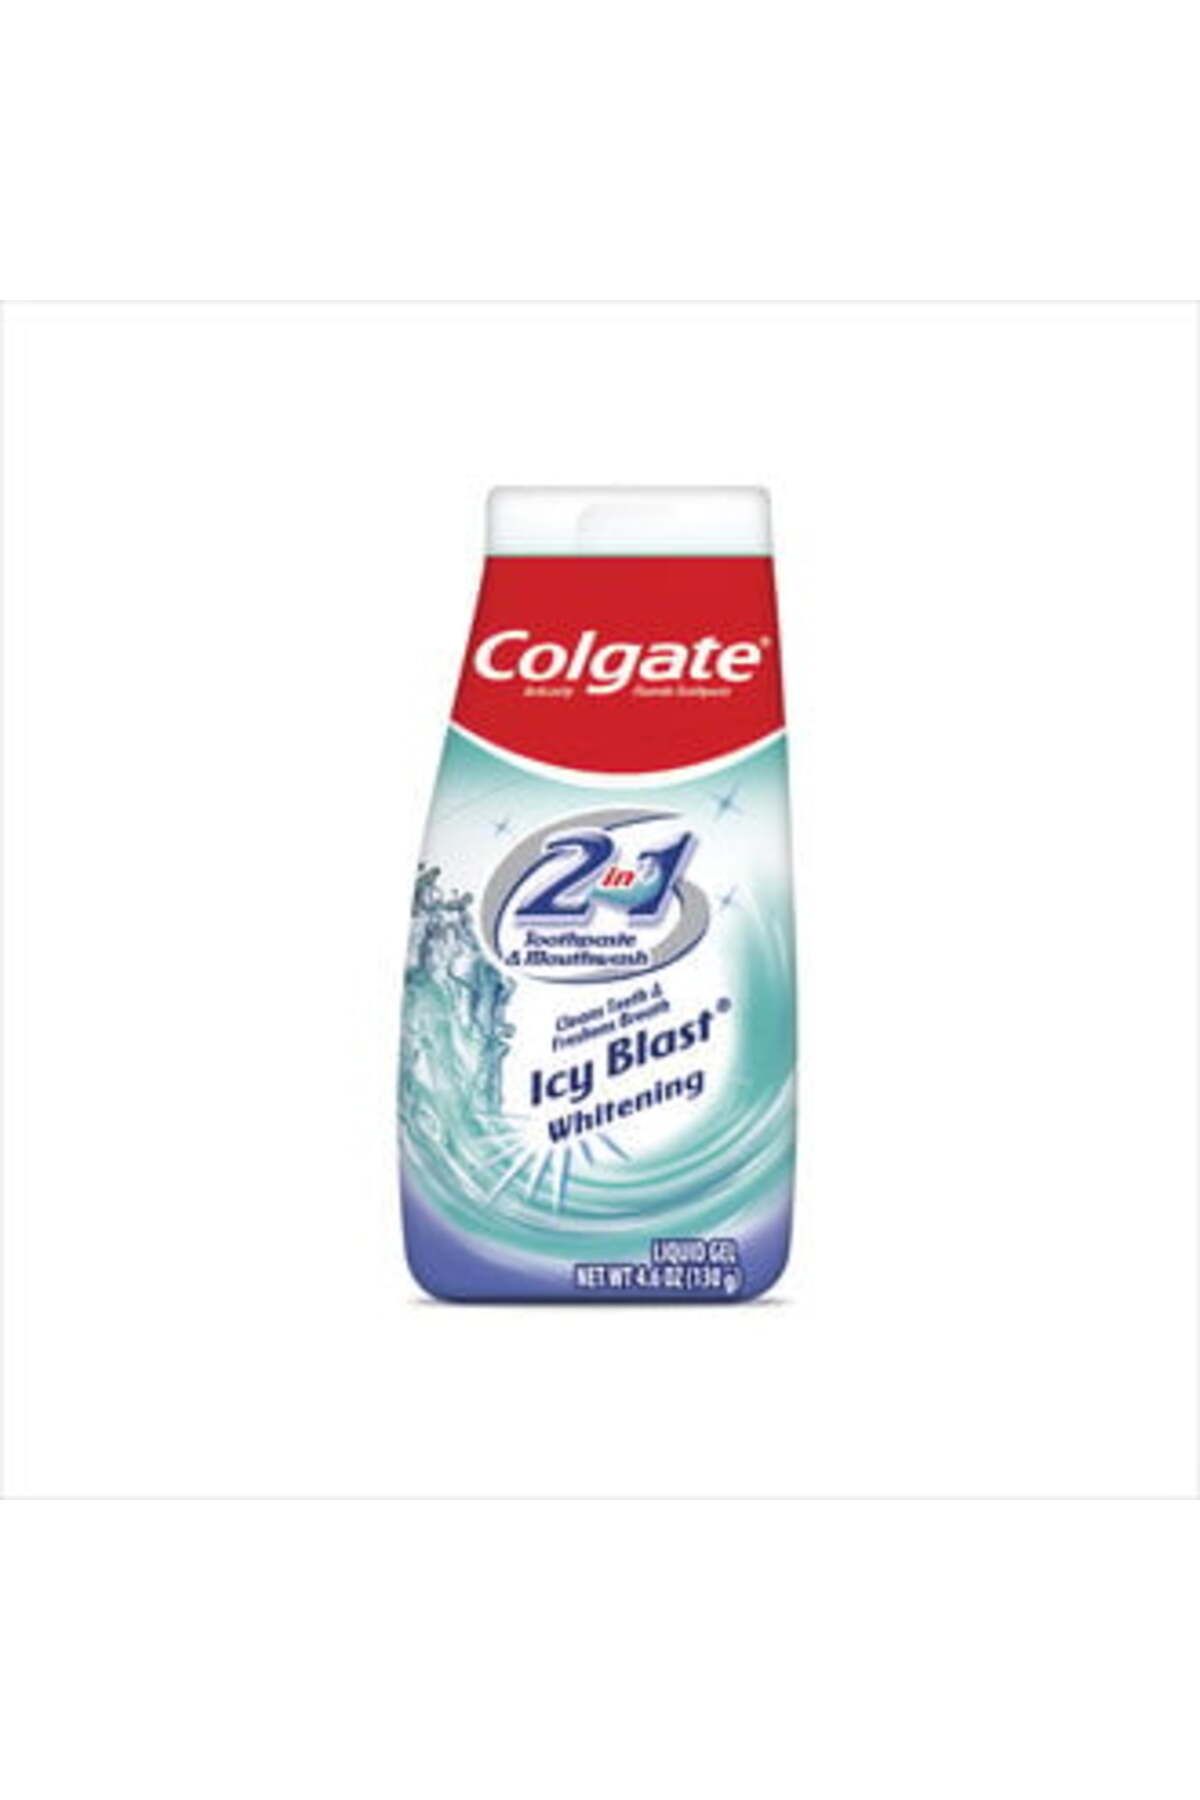 Colgate 2in1 Buz Ferahlığı Beyazlatıcı Diş Macunu 130 gr ( 2 ADET )